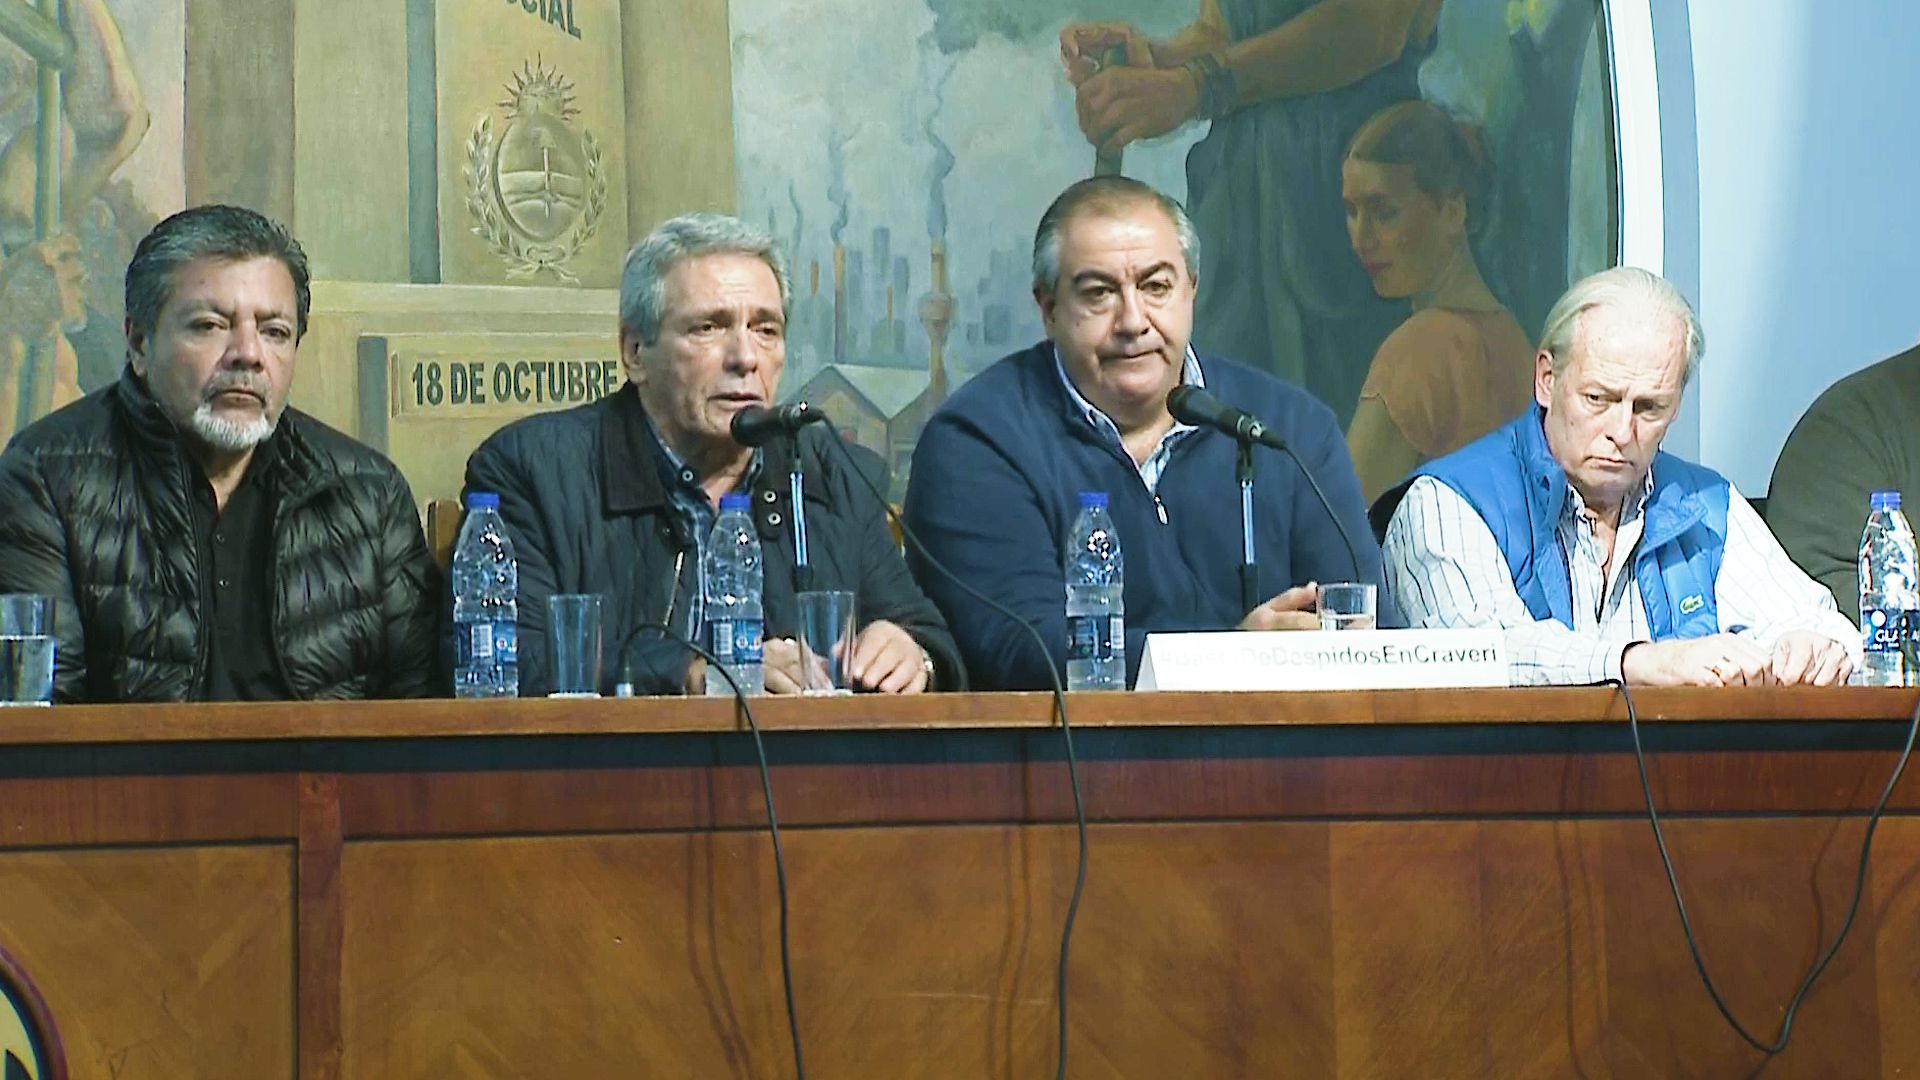 Martínez, Daer y Acuña, tres líderes sindicales que cuestionan a Macri y se preparan para apoyar a la fórmula Fernández y Fernández